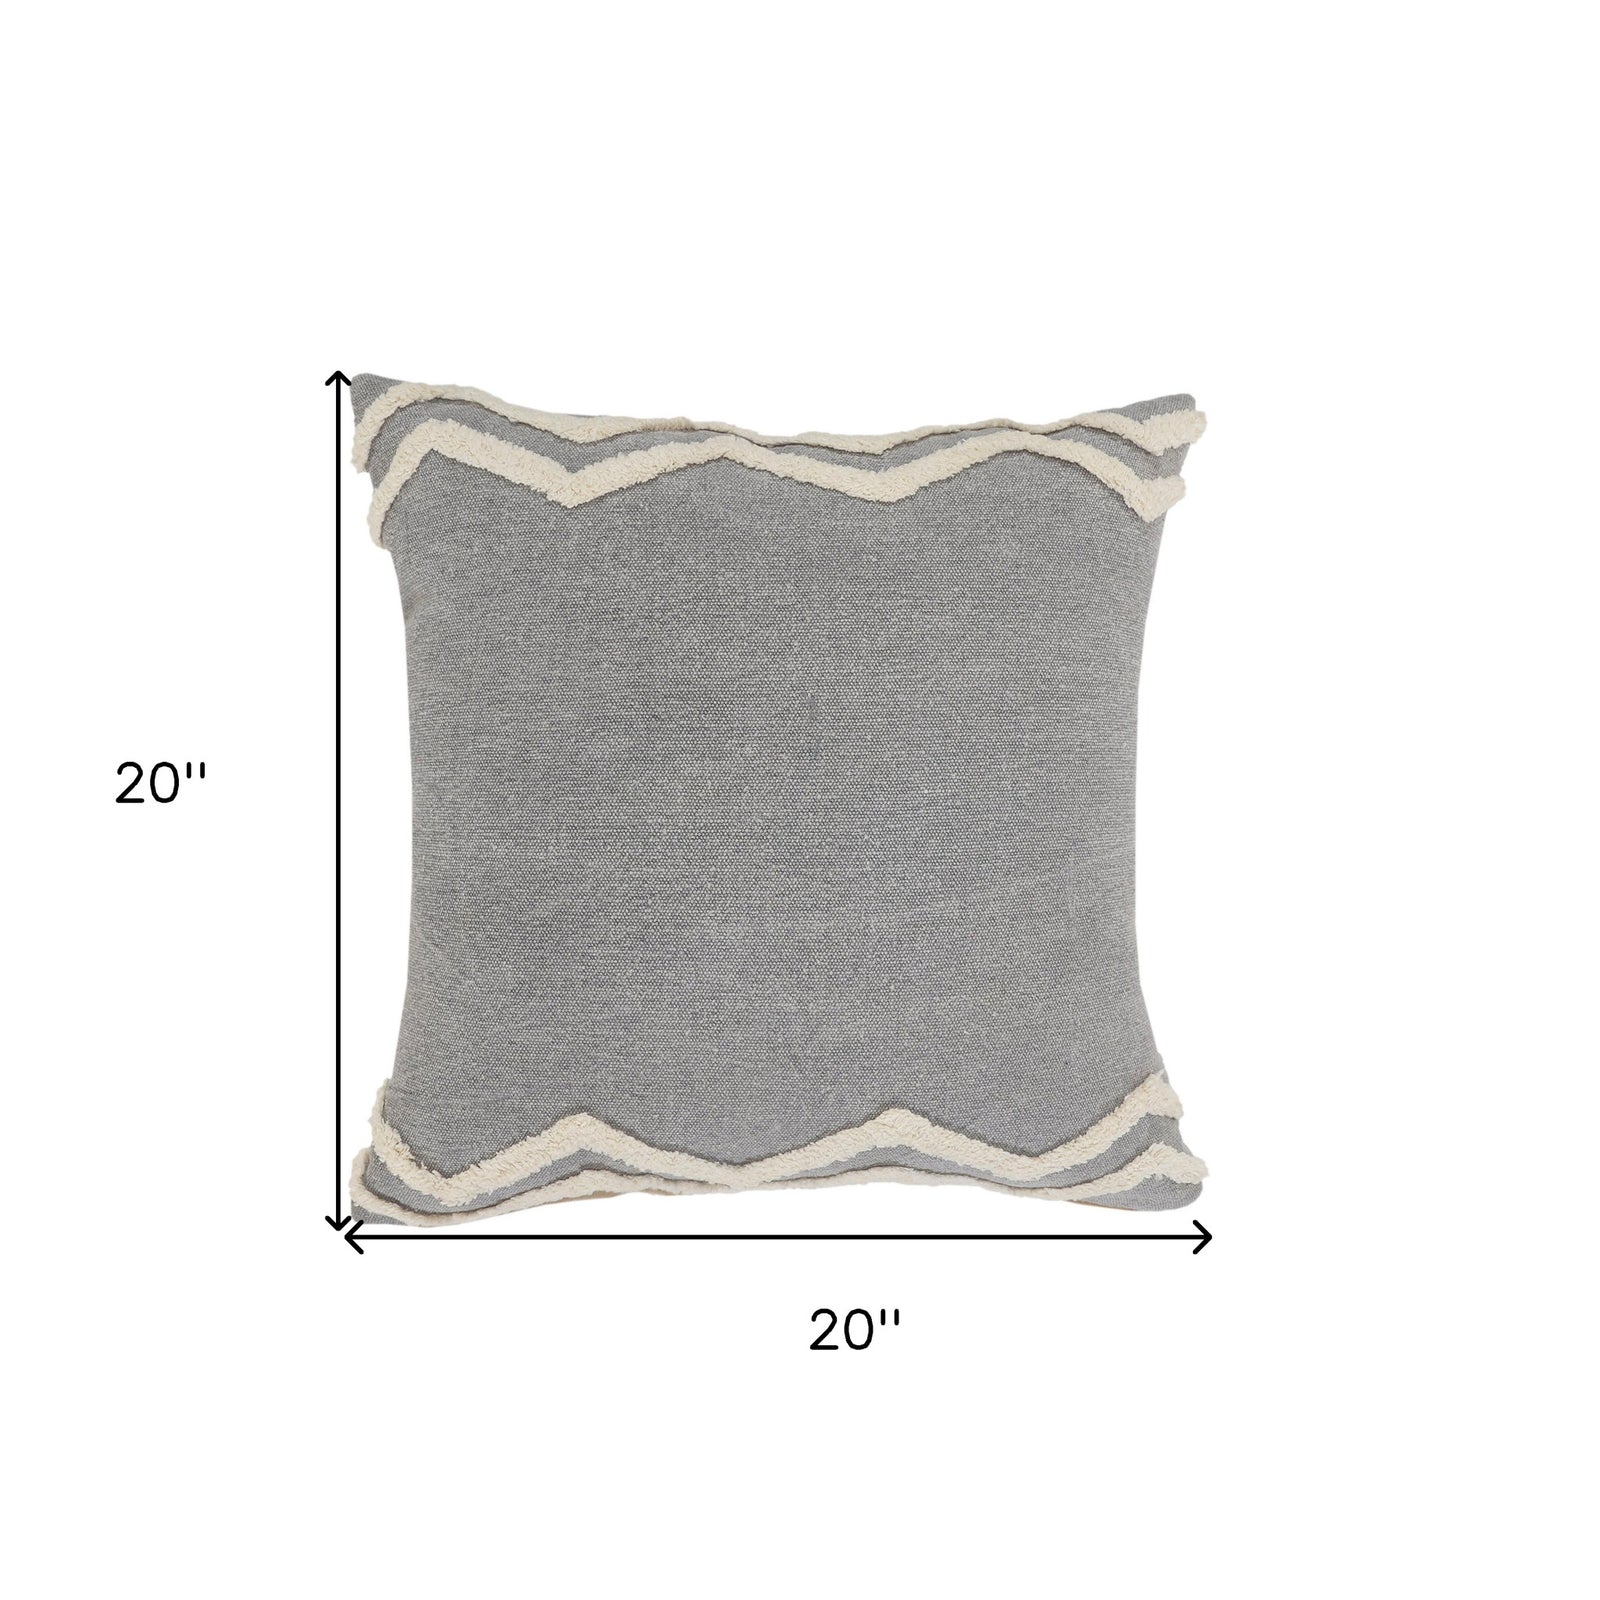 Set Of Two 20" X 20" Gray Chevron Zippered 100% Cotton Throw Pillow